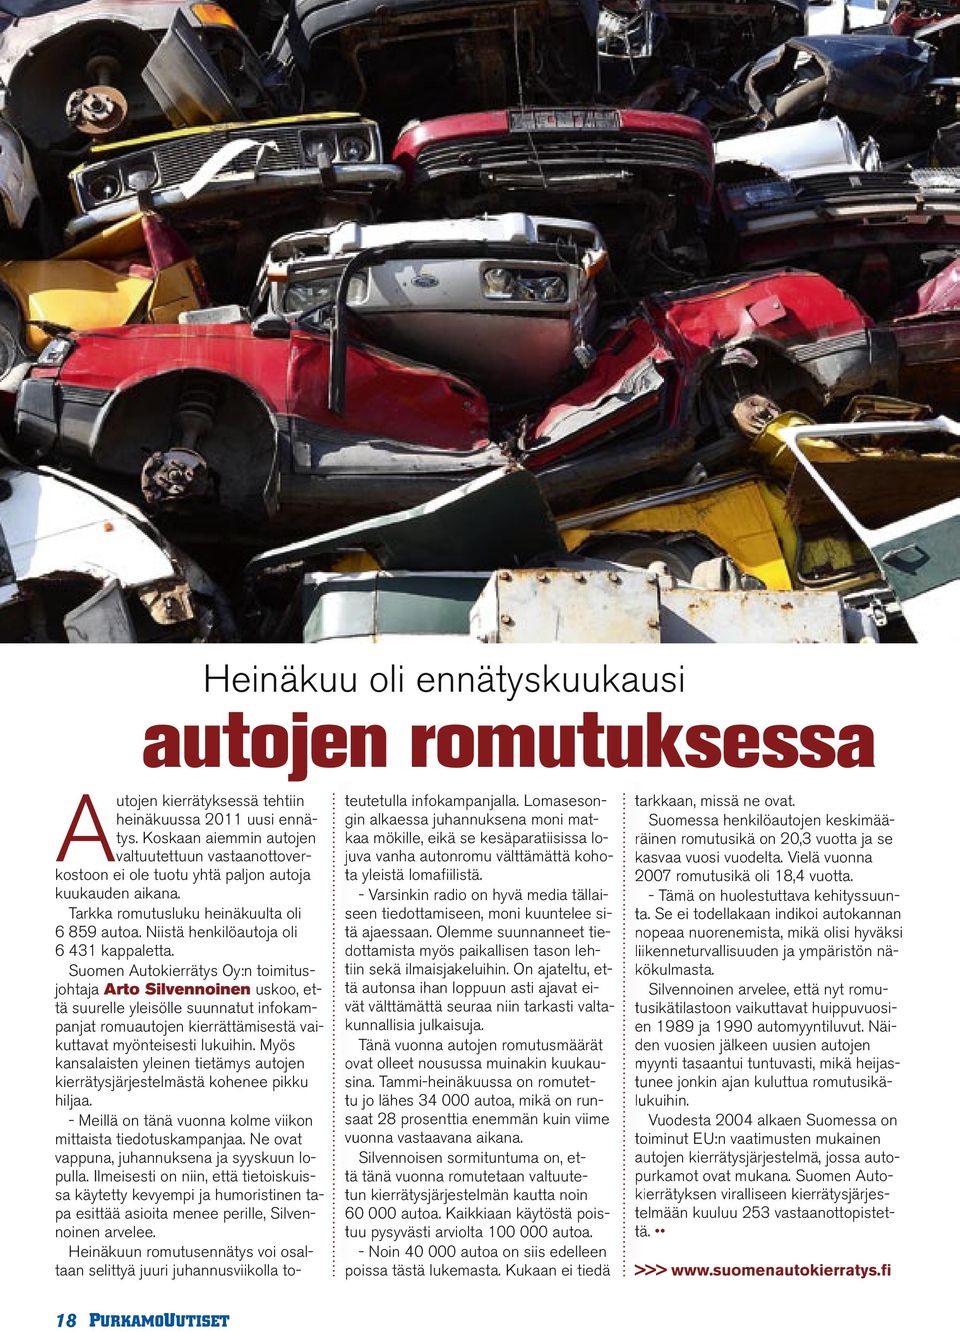 Suomen Autokierrätys Oy:n toimitusjohtaja Arto Silvennoinen uskoo, että suurelle yleisölle suunnatut infokampanjat romuautojen kierrättämisestä vaikuttavat myönteisesti lukuihin.